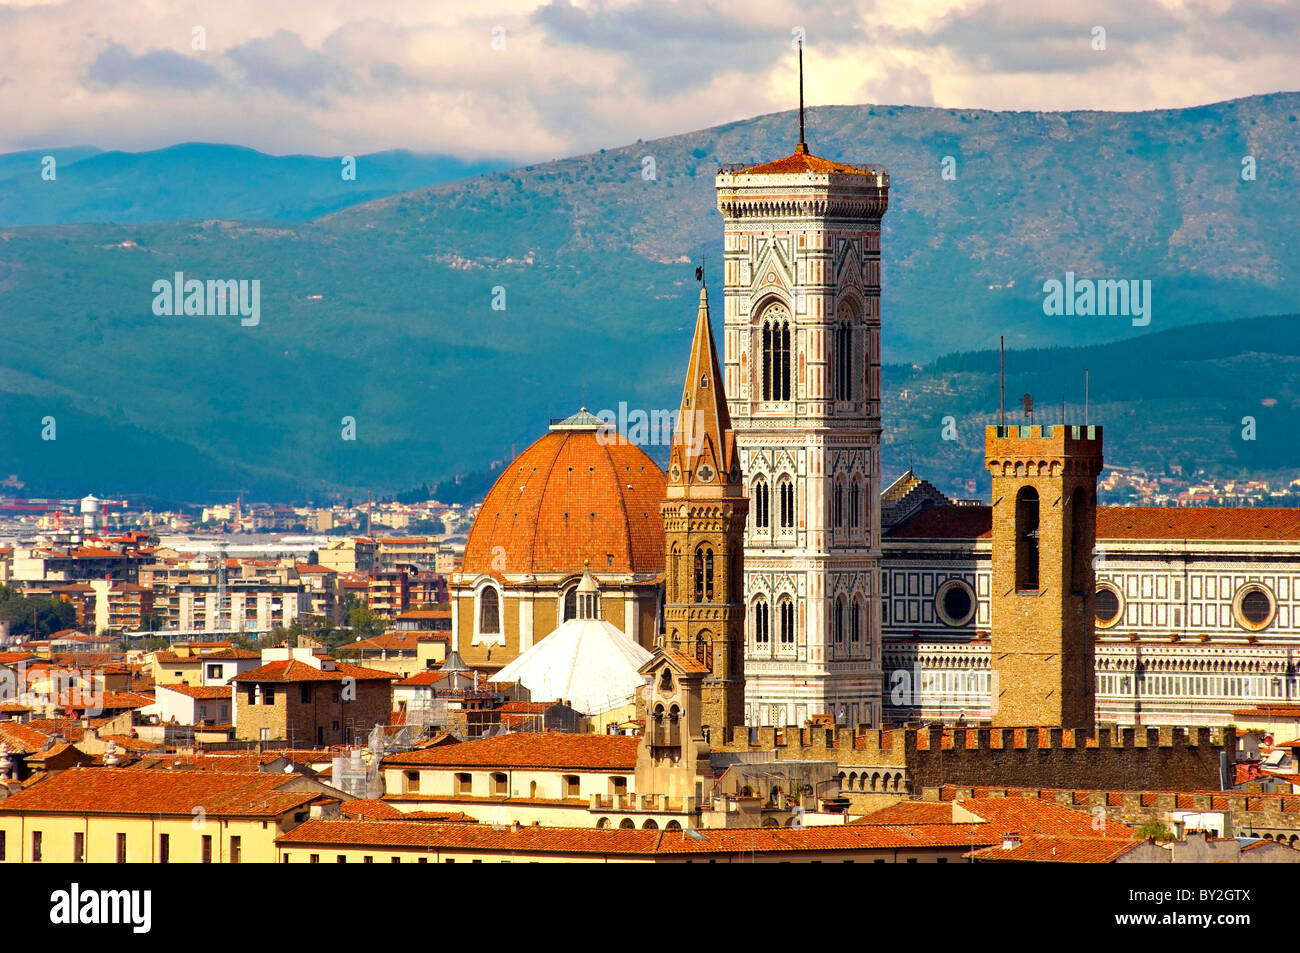 Die Kuppel & Glockenturm über die Dächer - Florenz-Italien. Stockfoto